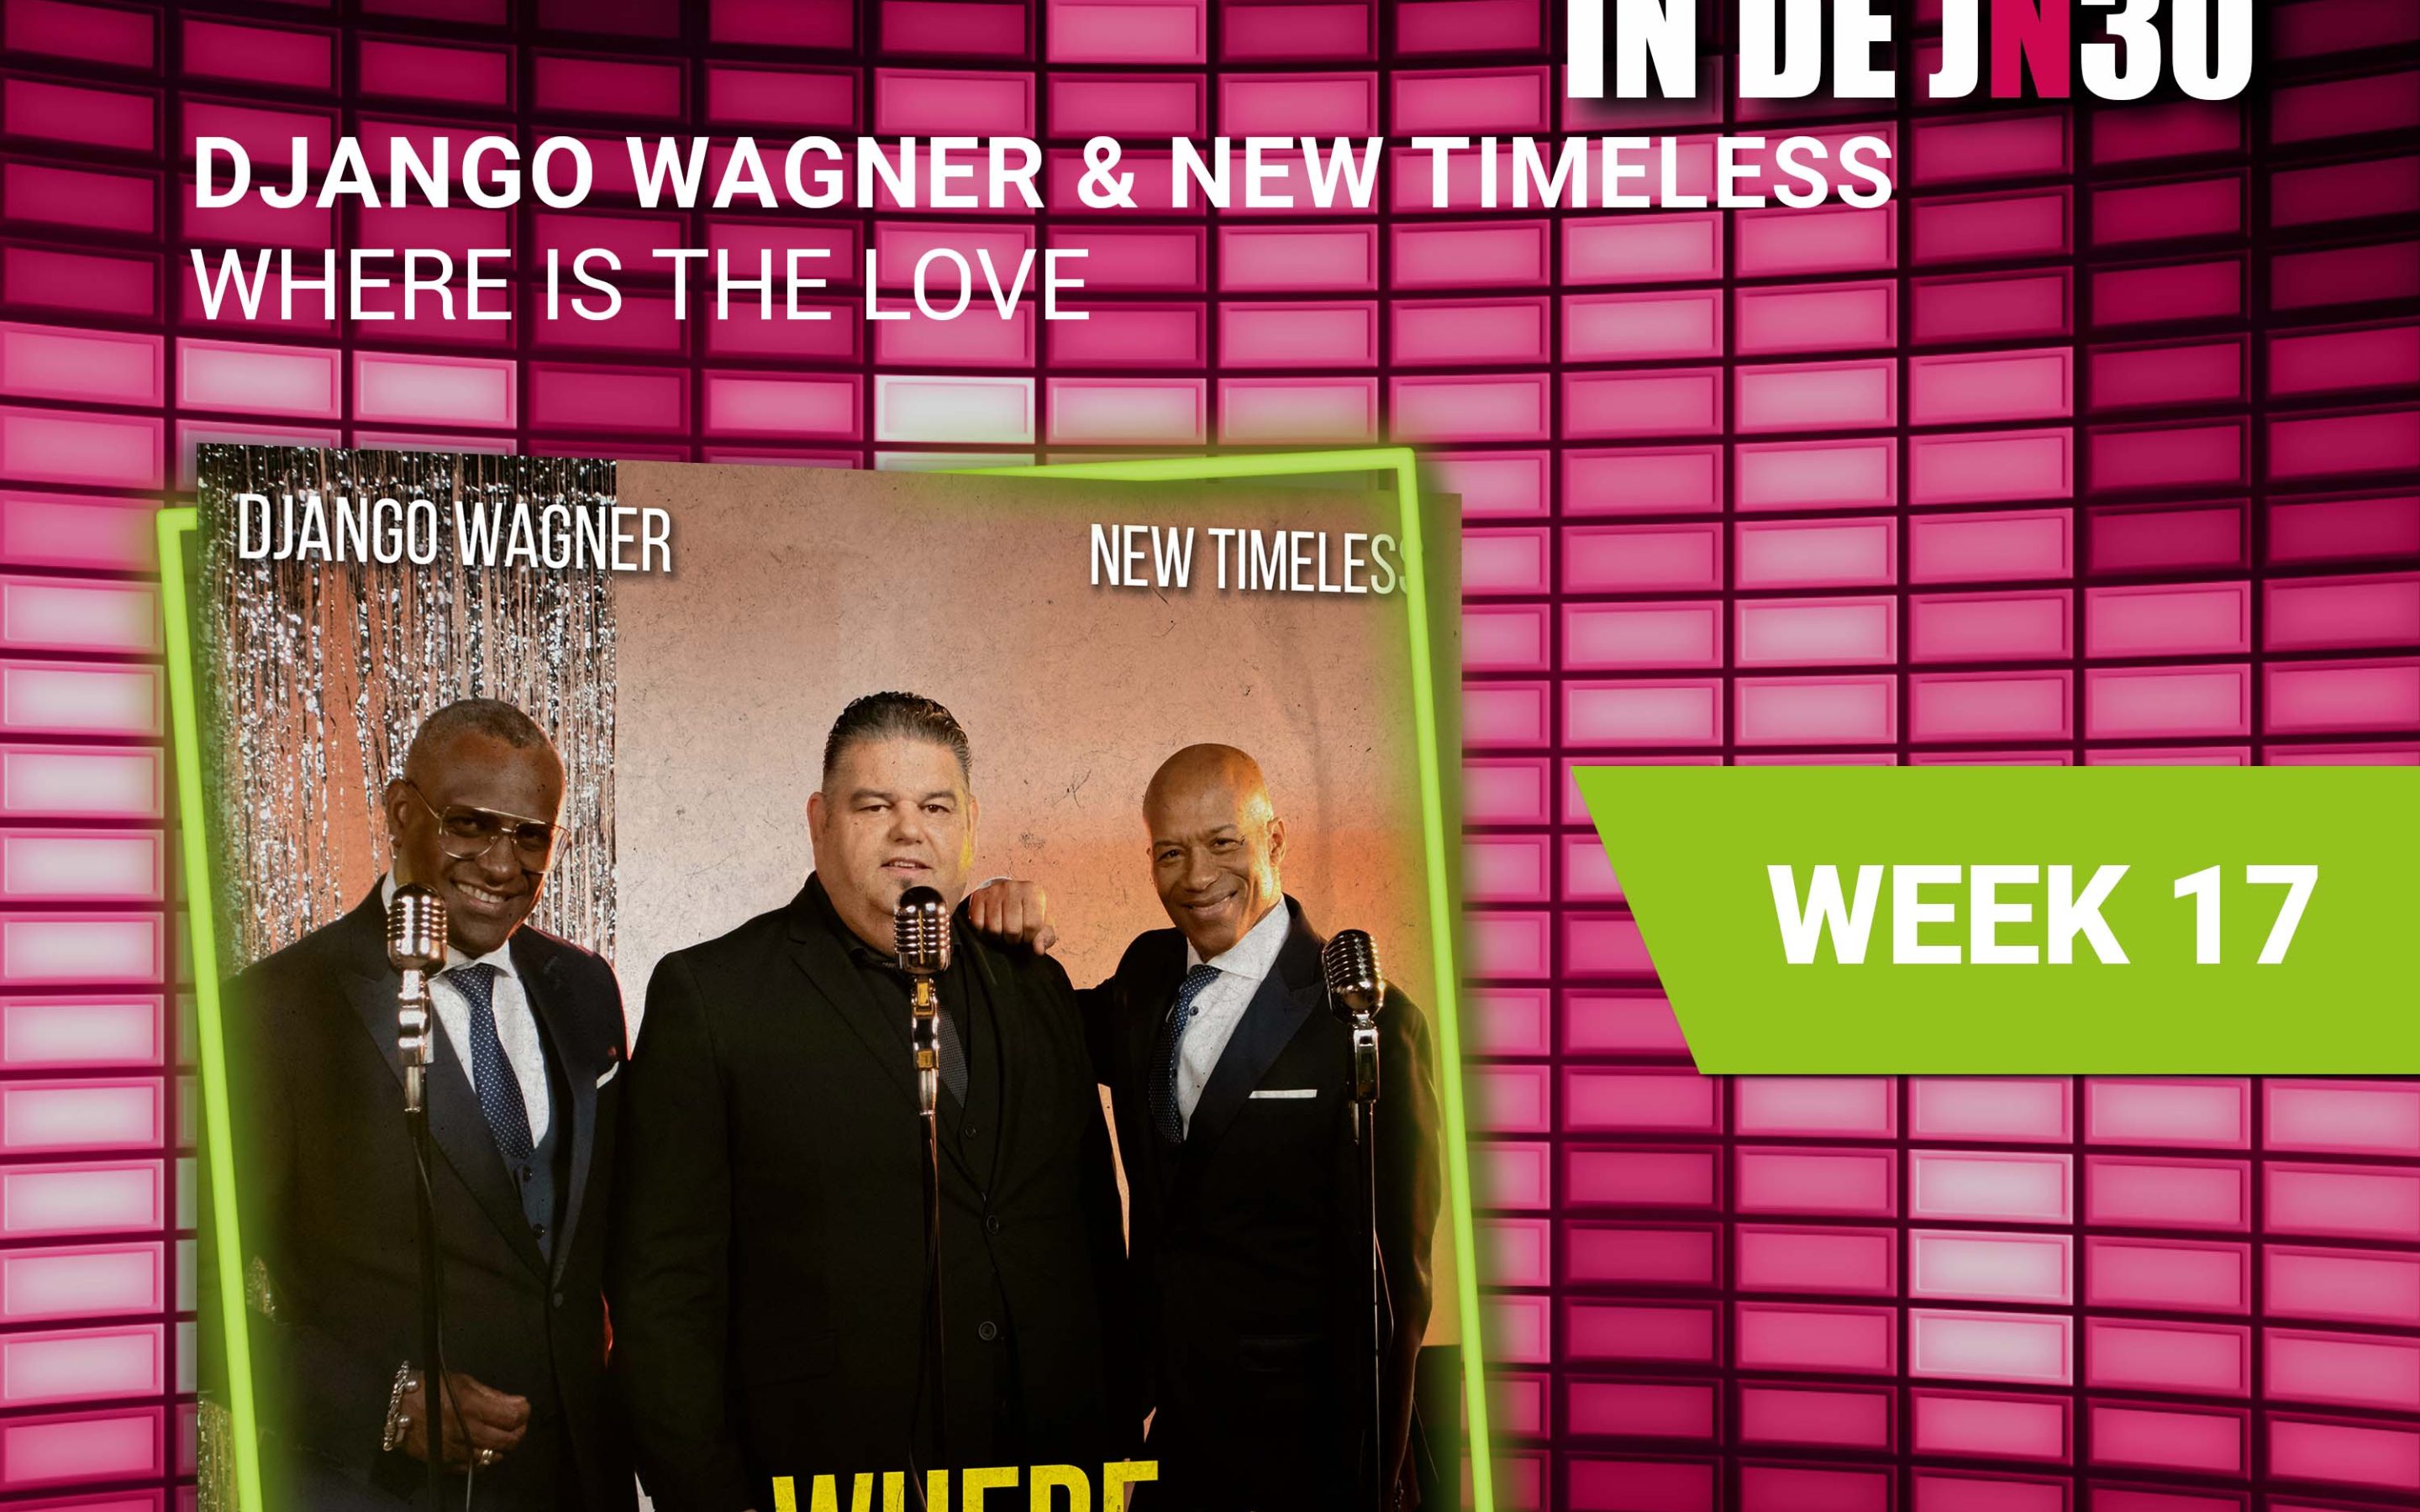 Django Wagner & New Timeless – Where Is The Love de nieuwe nummer 1# in de JN30